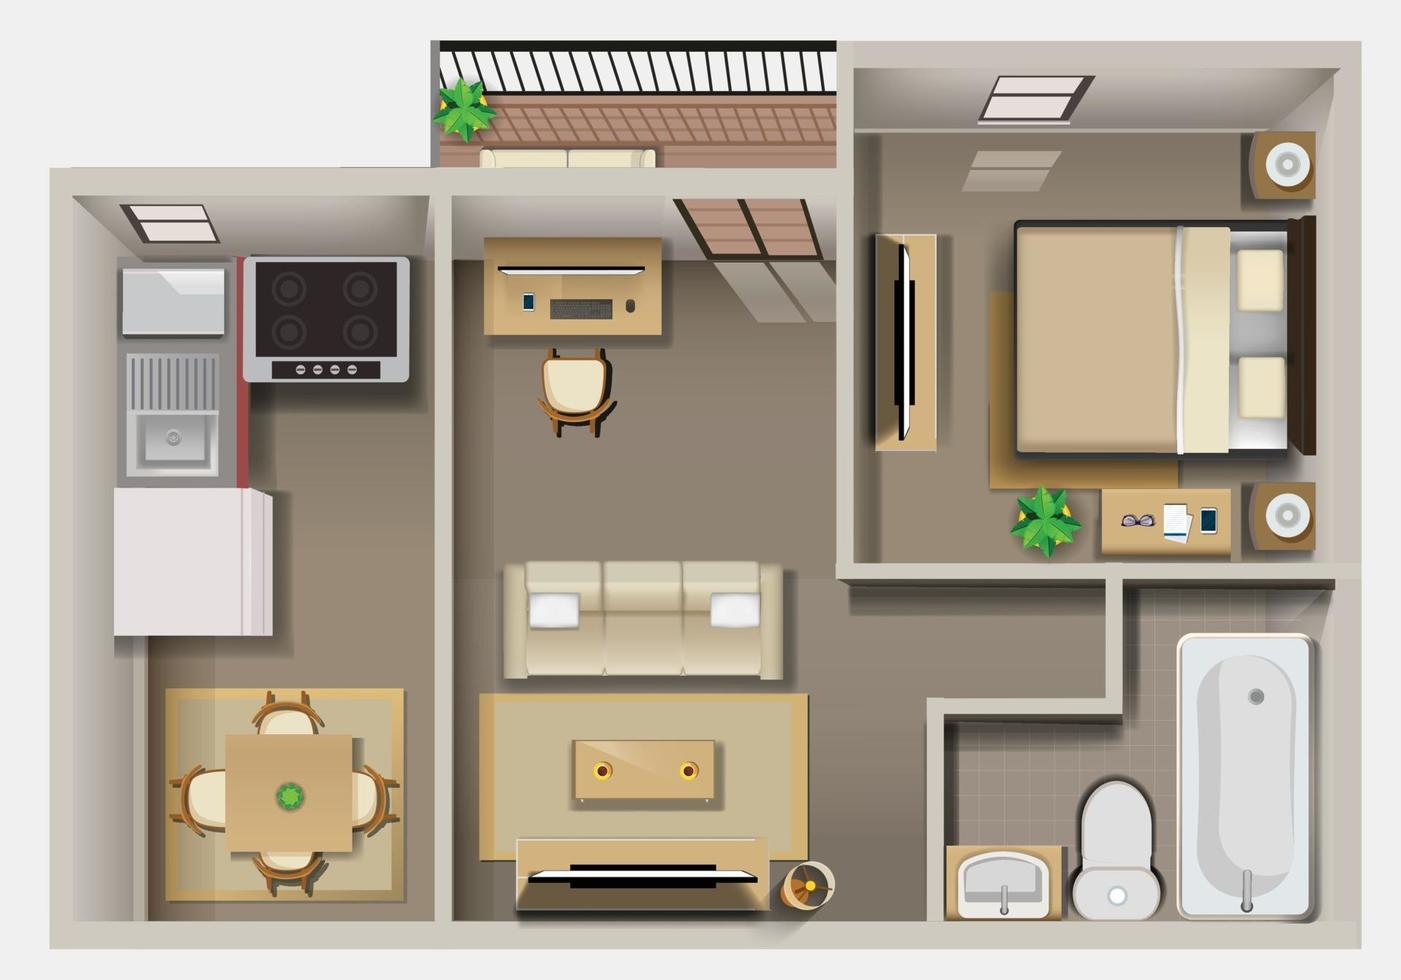 Plan détaillé de l'intérieur de l'appartement vue de dessus vecteur